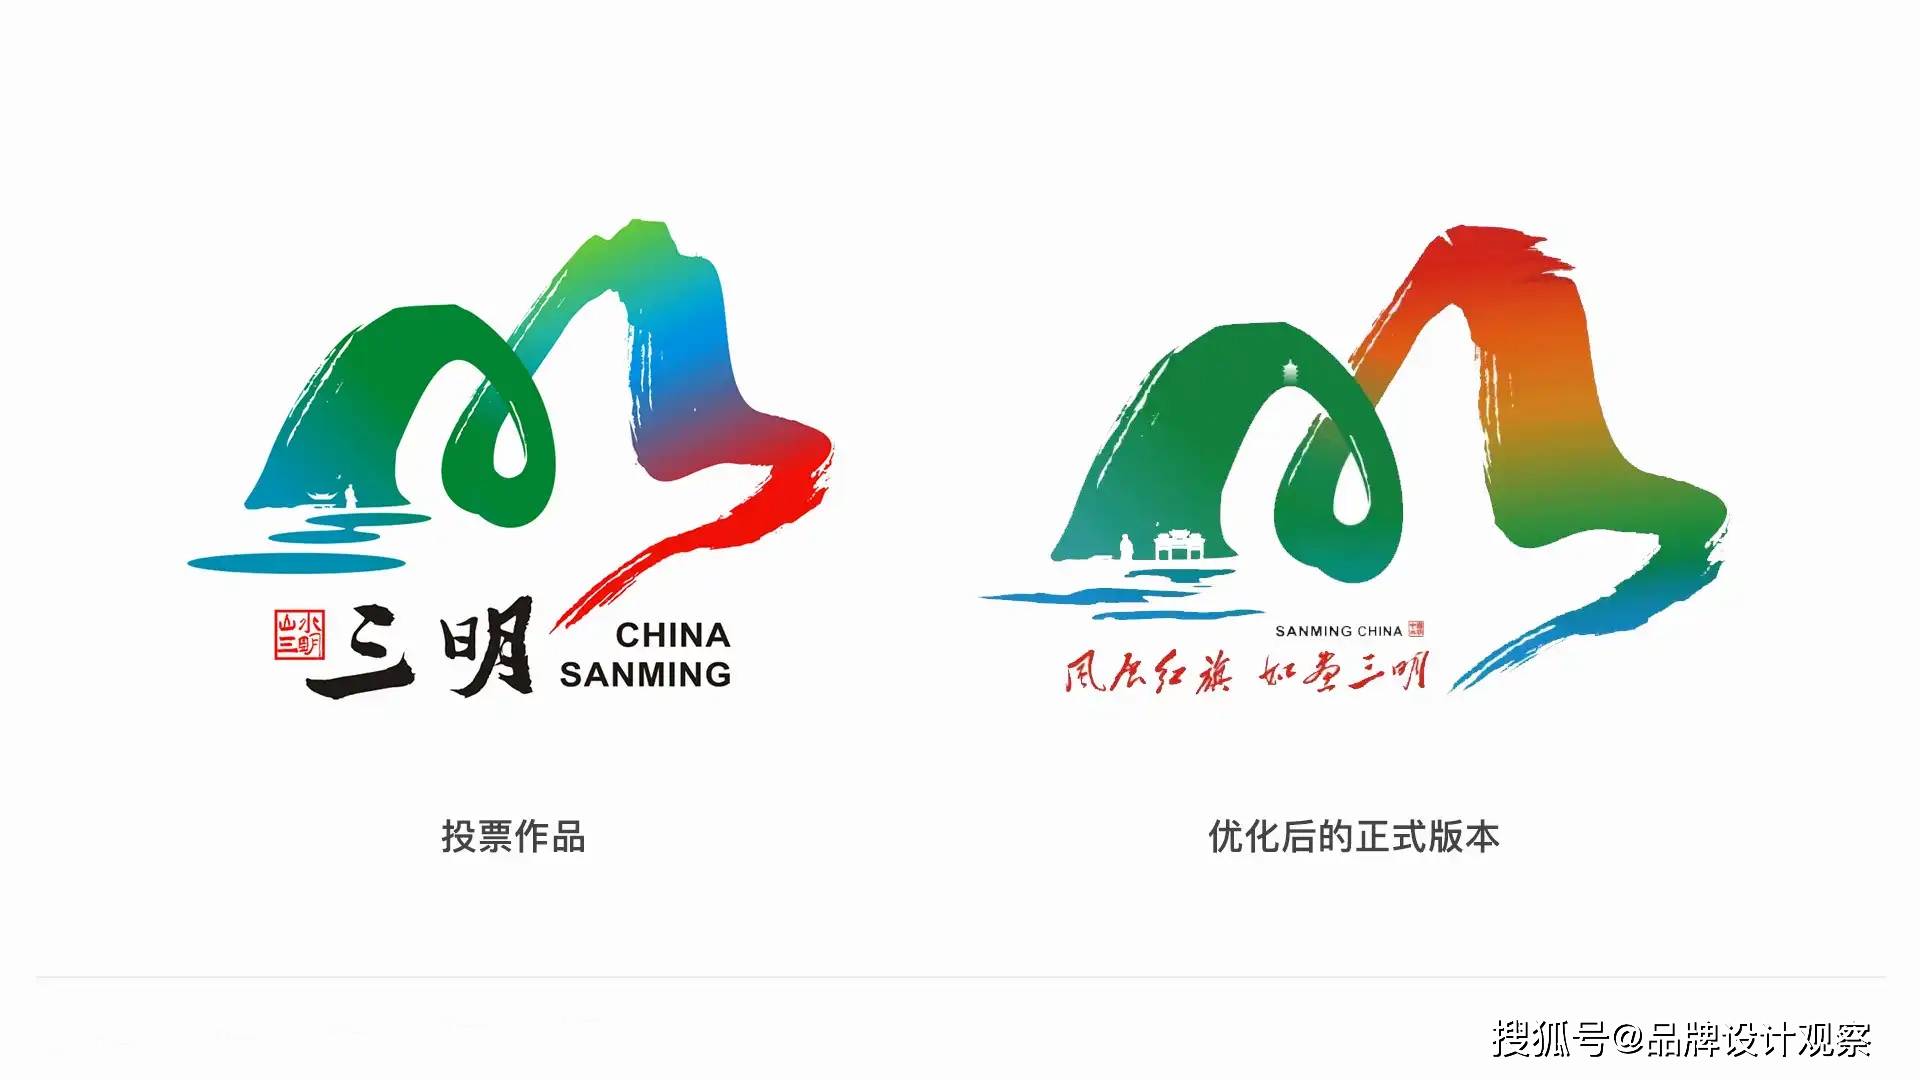 福建三明市城市logo正式发布——国内专业vi设计公司分享